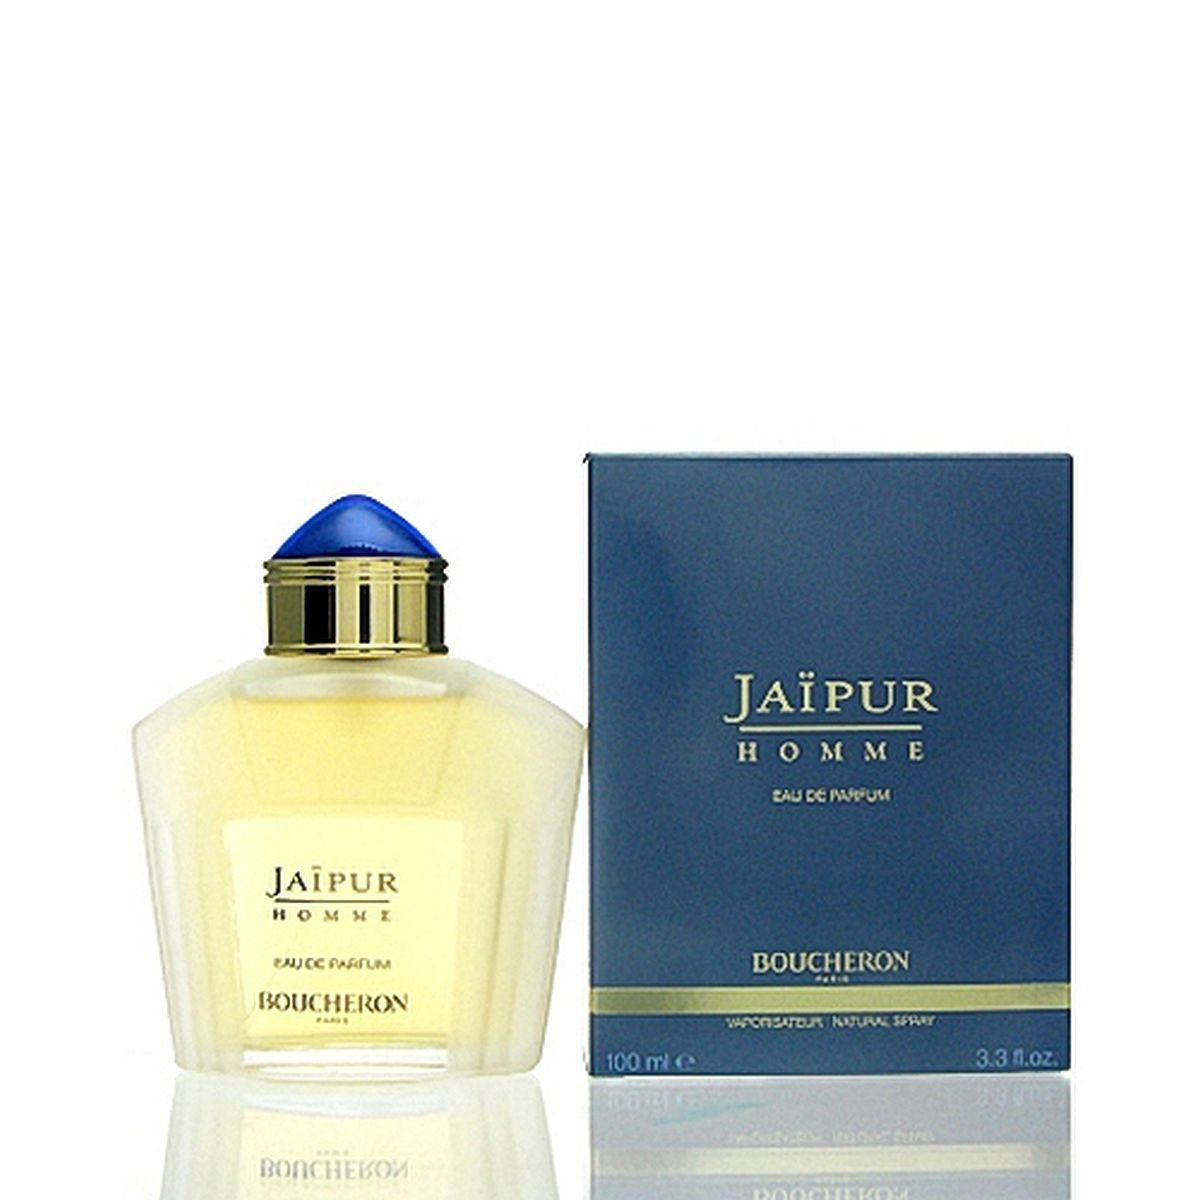 Eau Jaipur Homme de 100 ml Eau Parfum BOUCHERON de Parfum Boucheron